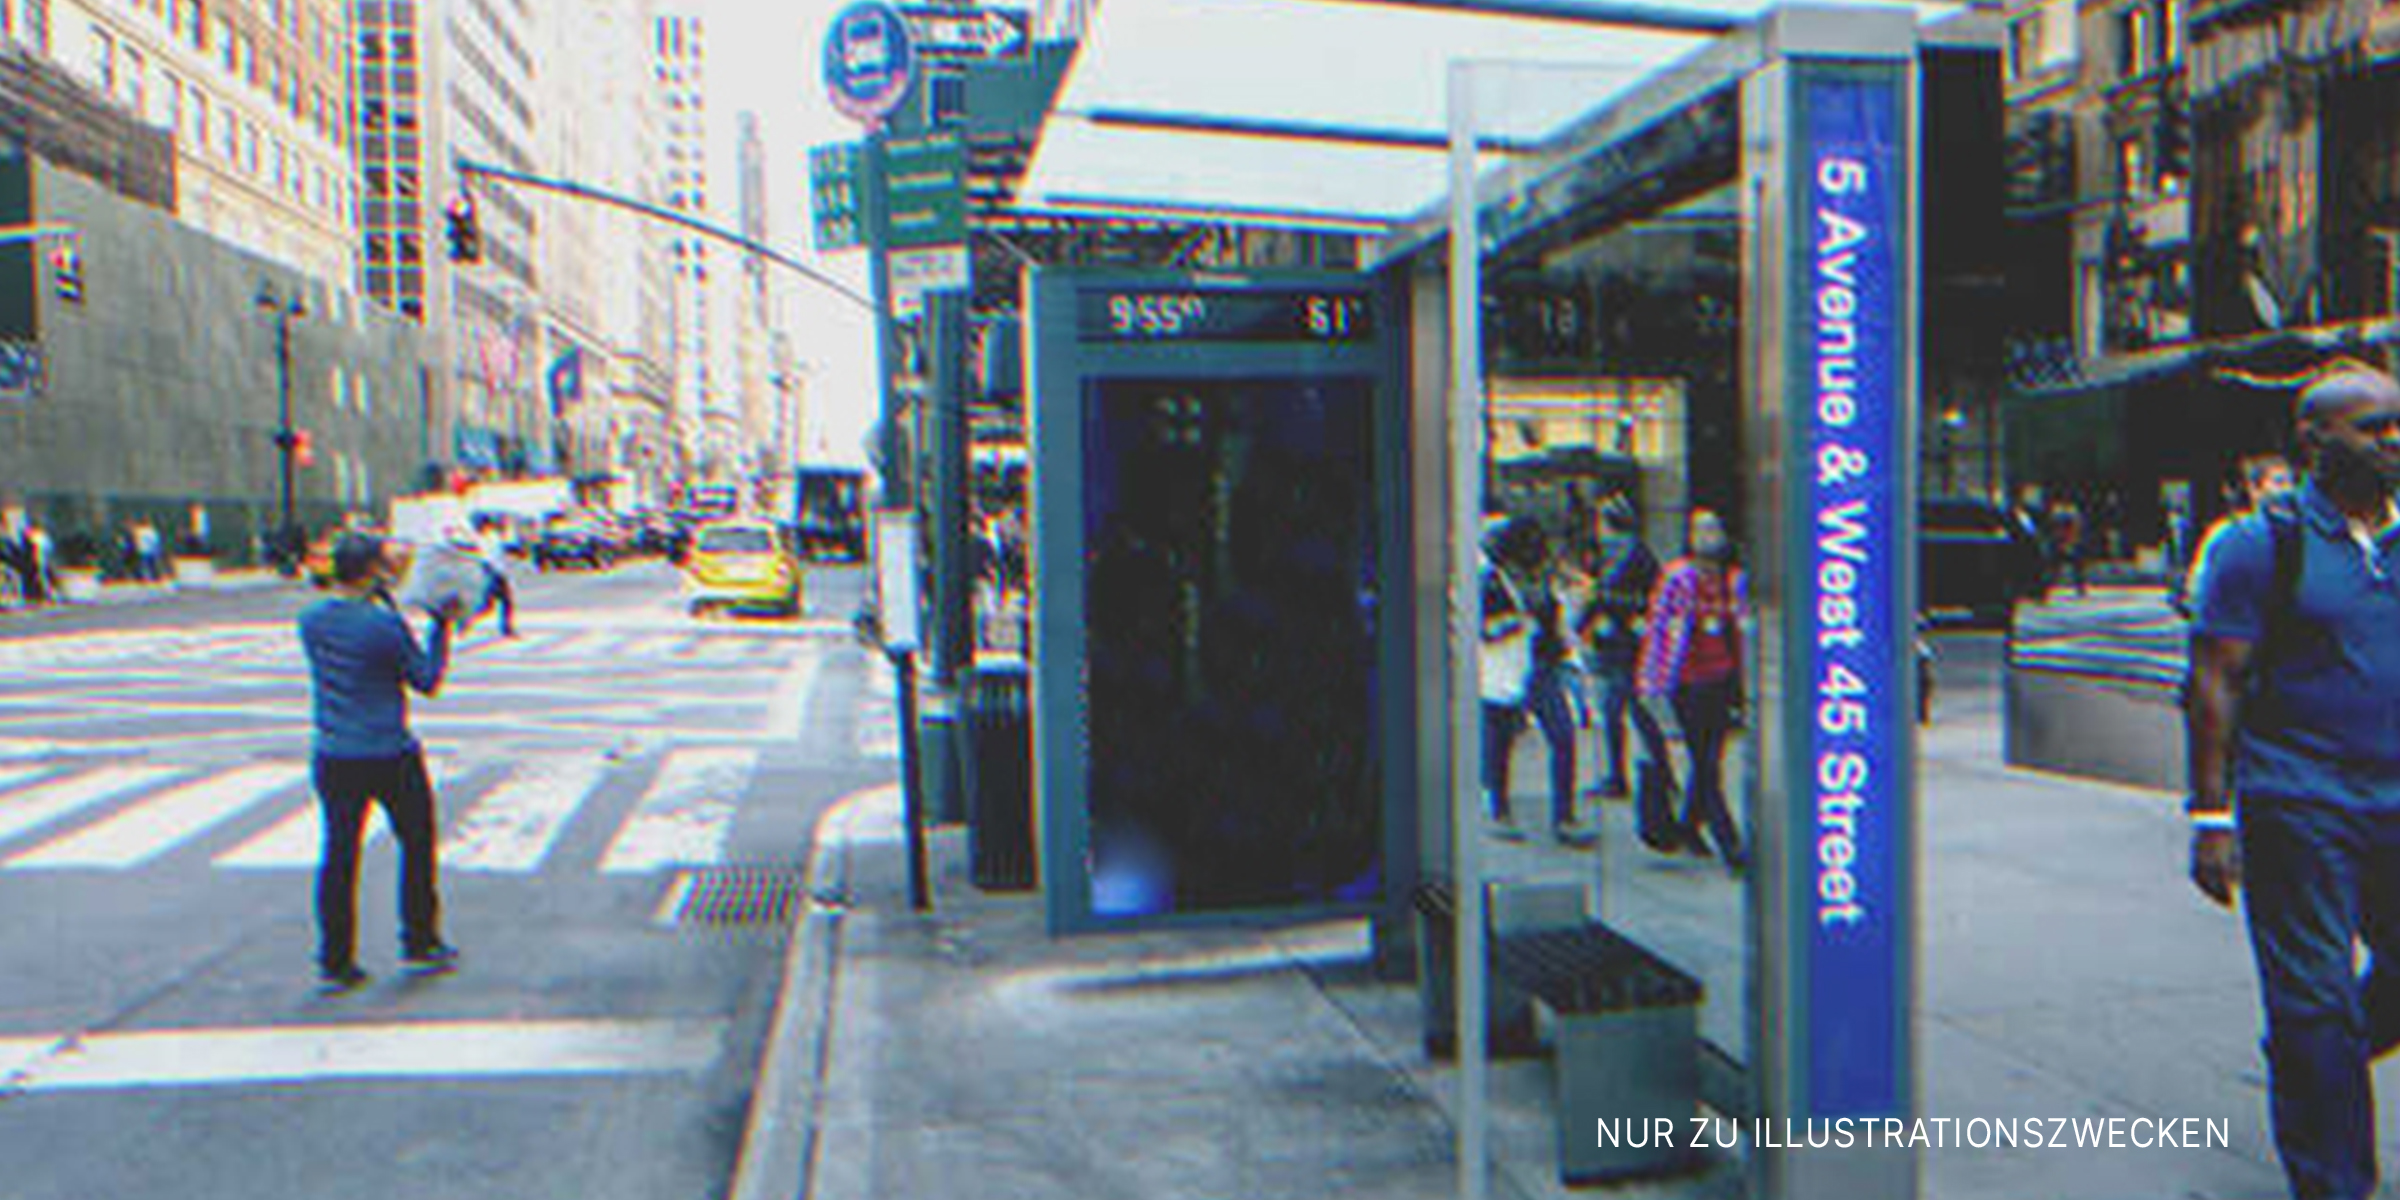 Eine Bushaltestelle | Quelle: Shutterstock